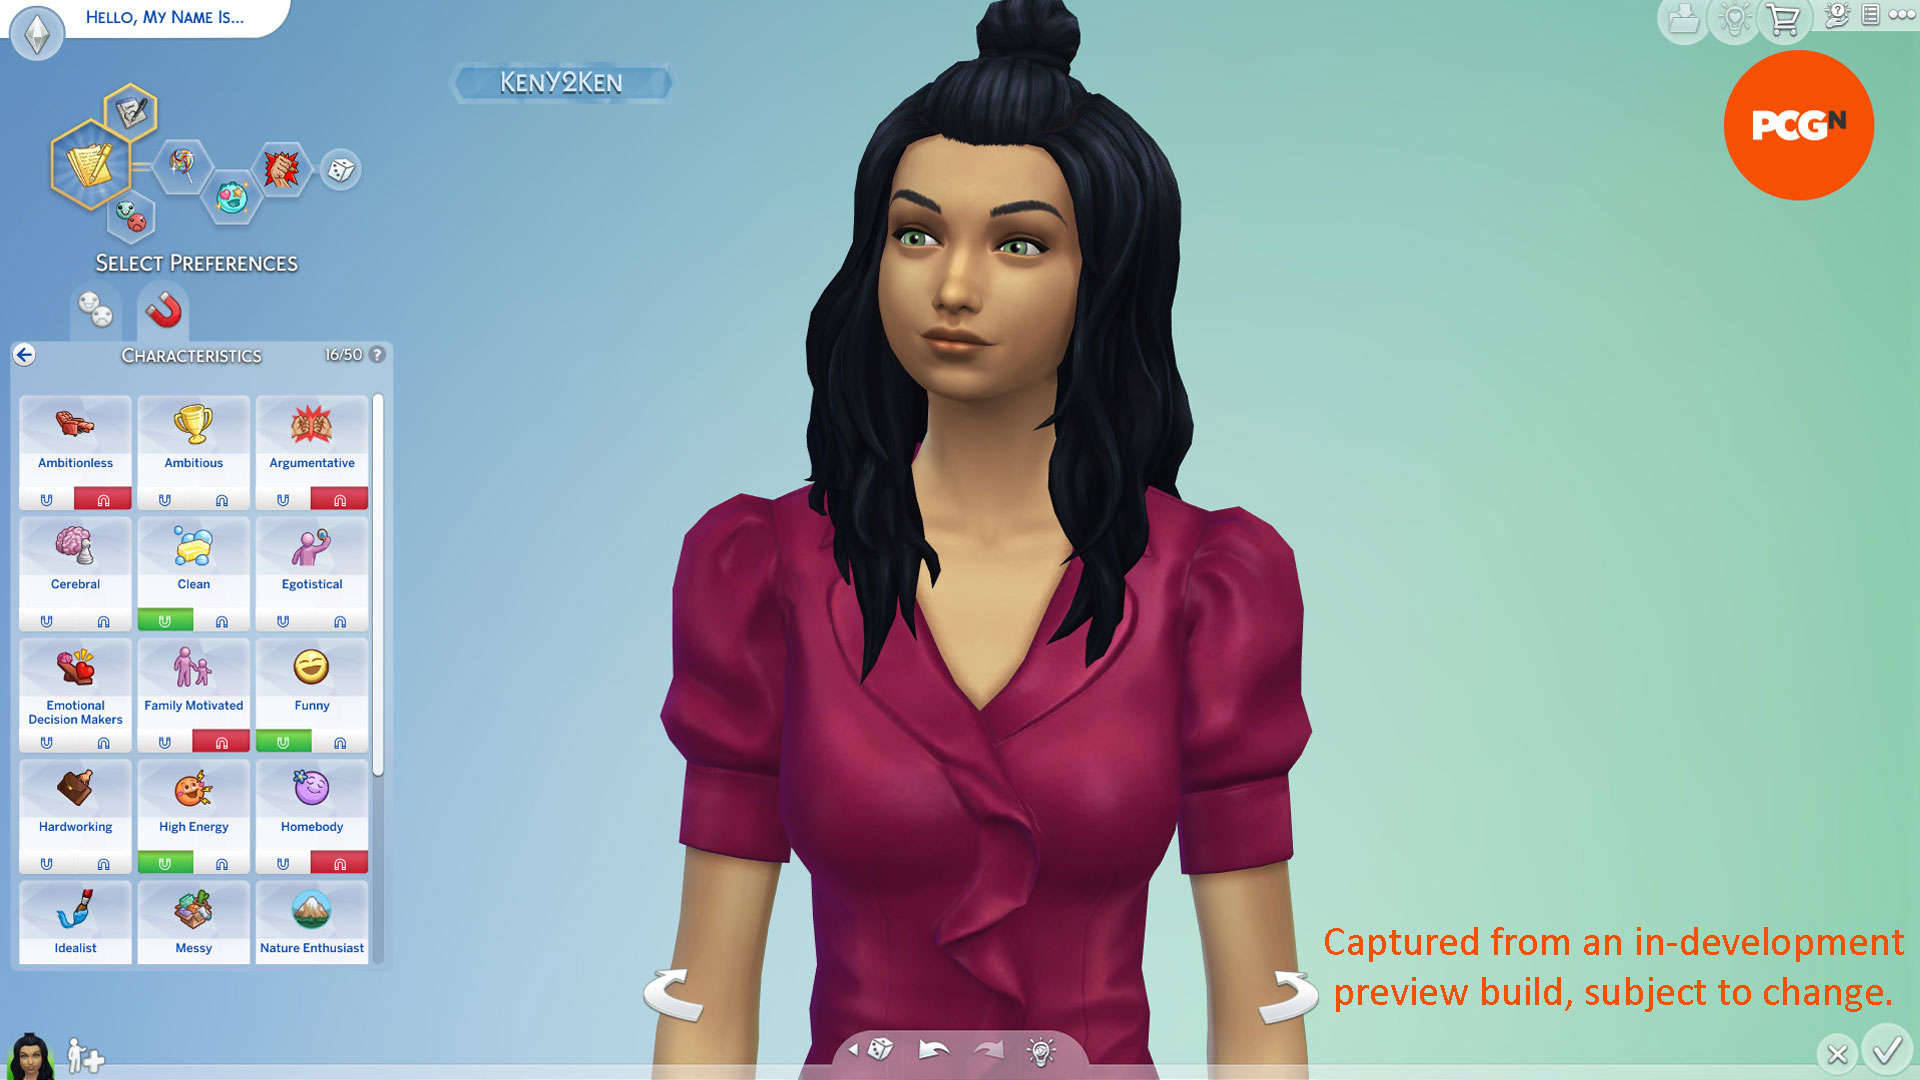 The Sims 4 Lovestruck - Yeni Heyecan Verici ve Heyecan Verici olmayan özellikler menüsü.